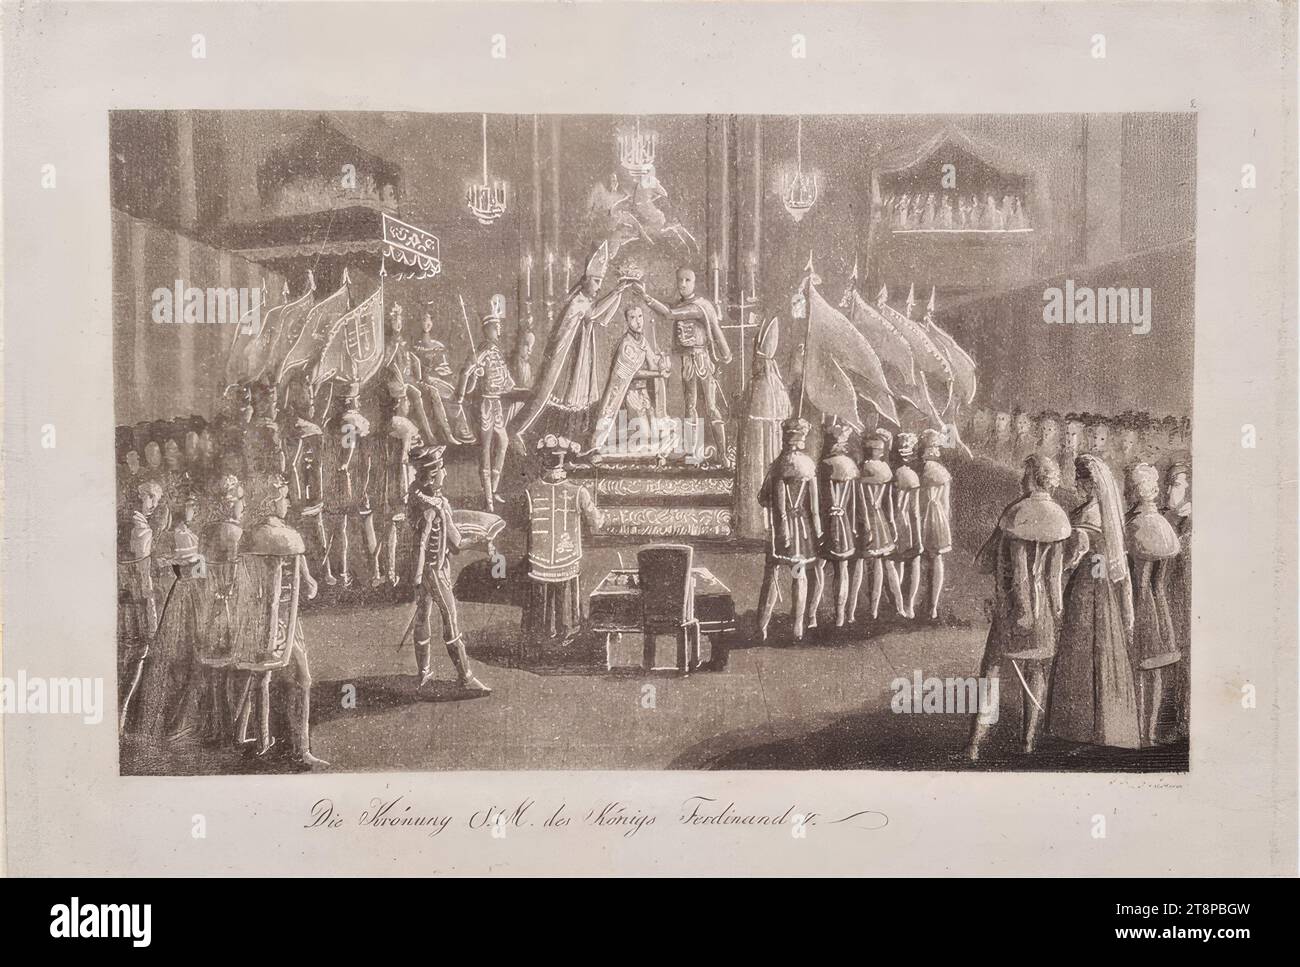 Krönung von Kronprinz Erzherzog Ferdinand zum König von Ungarn am 28. September 1830 in Preußen, um 1830, Druck, Aquatint auf Papier, Blatt: 12,1 x 17,7 cm, [oben rechts] '2 Stockfoto